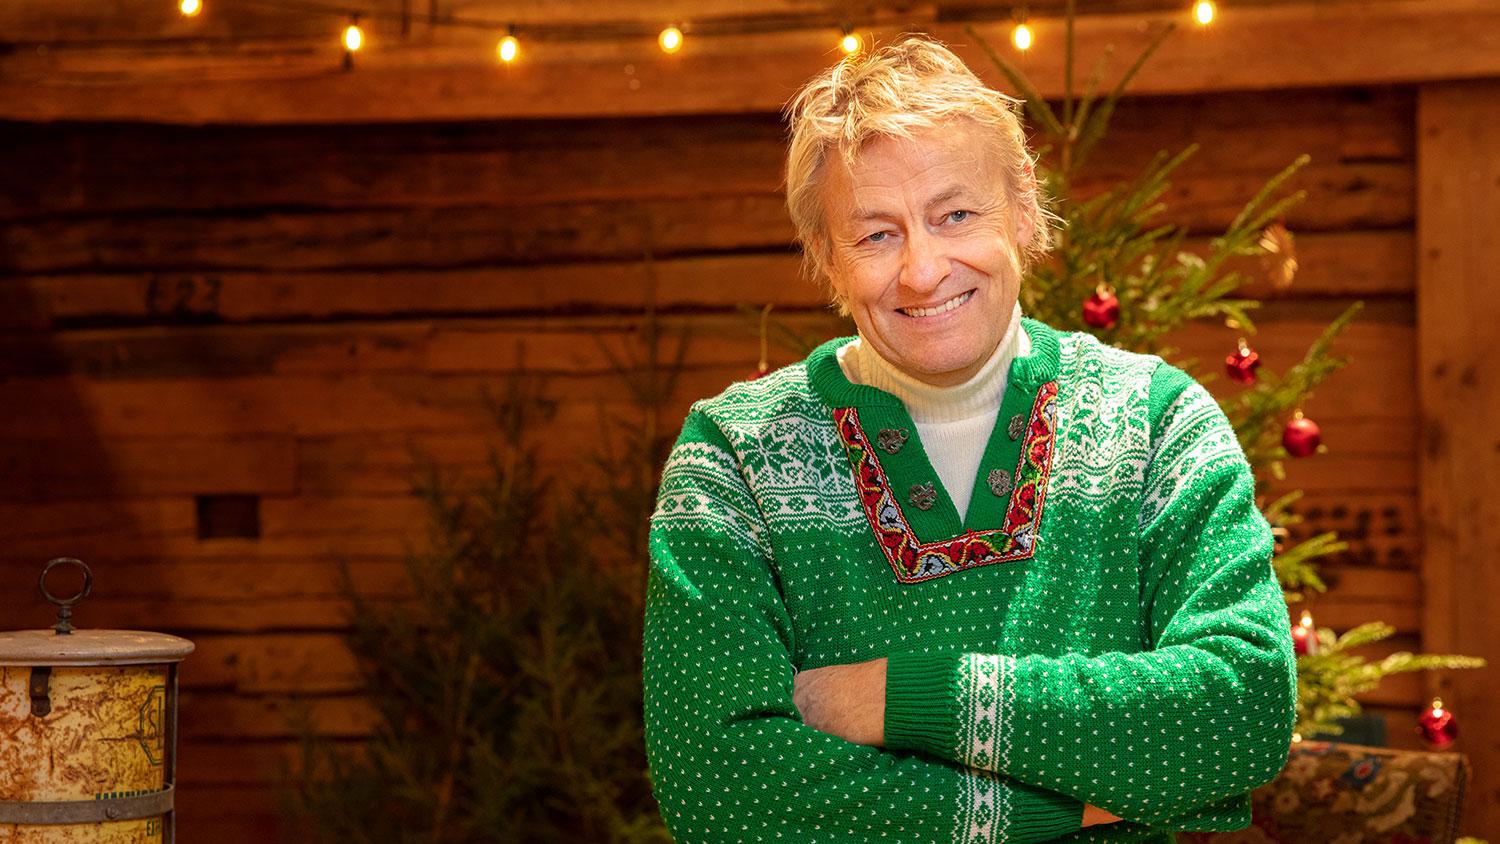 Lars Lerin är årets julvärd.